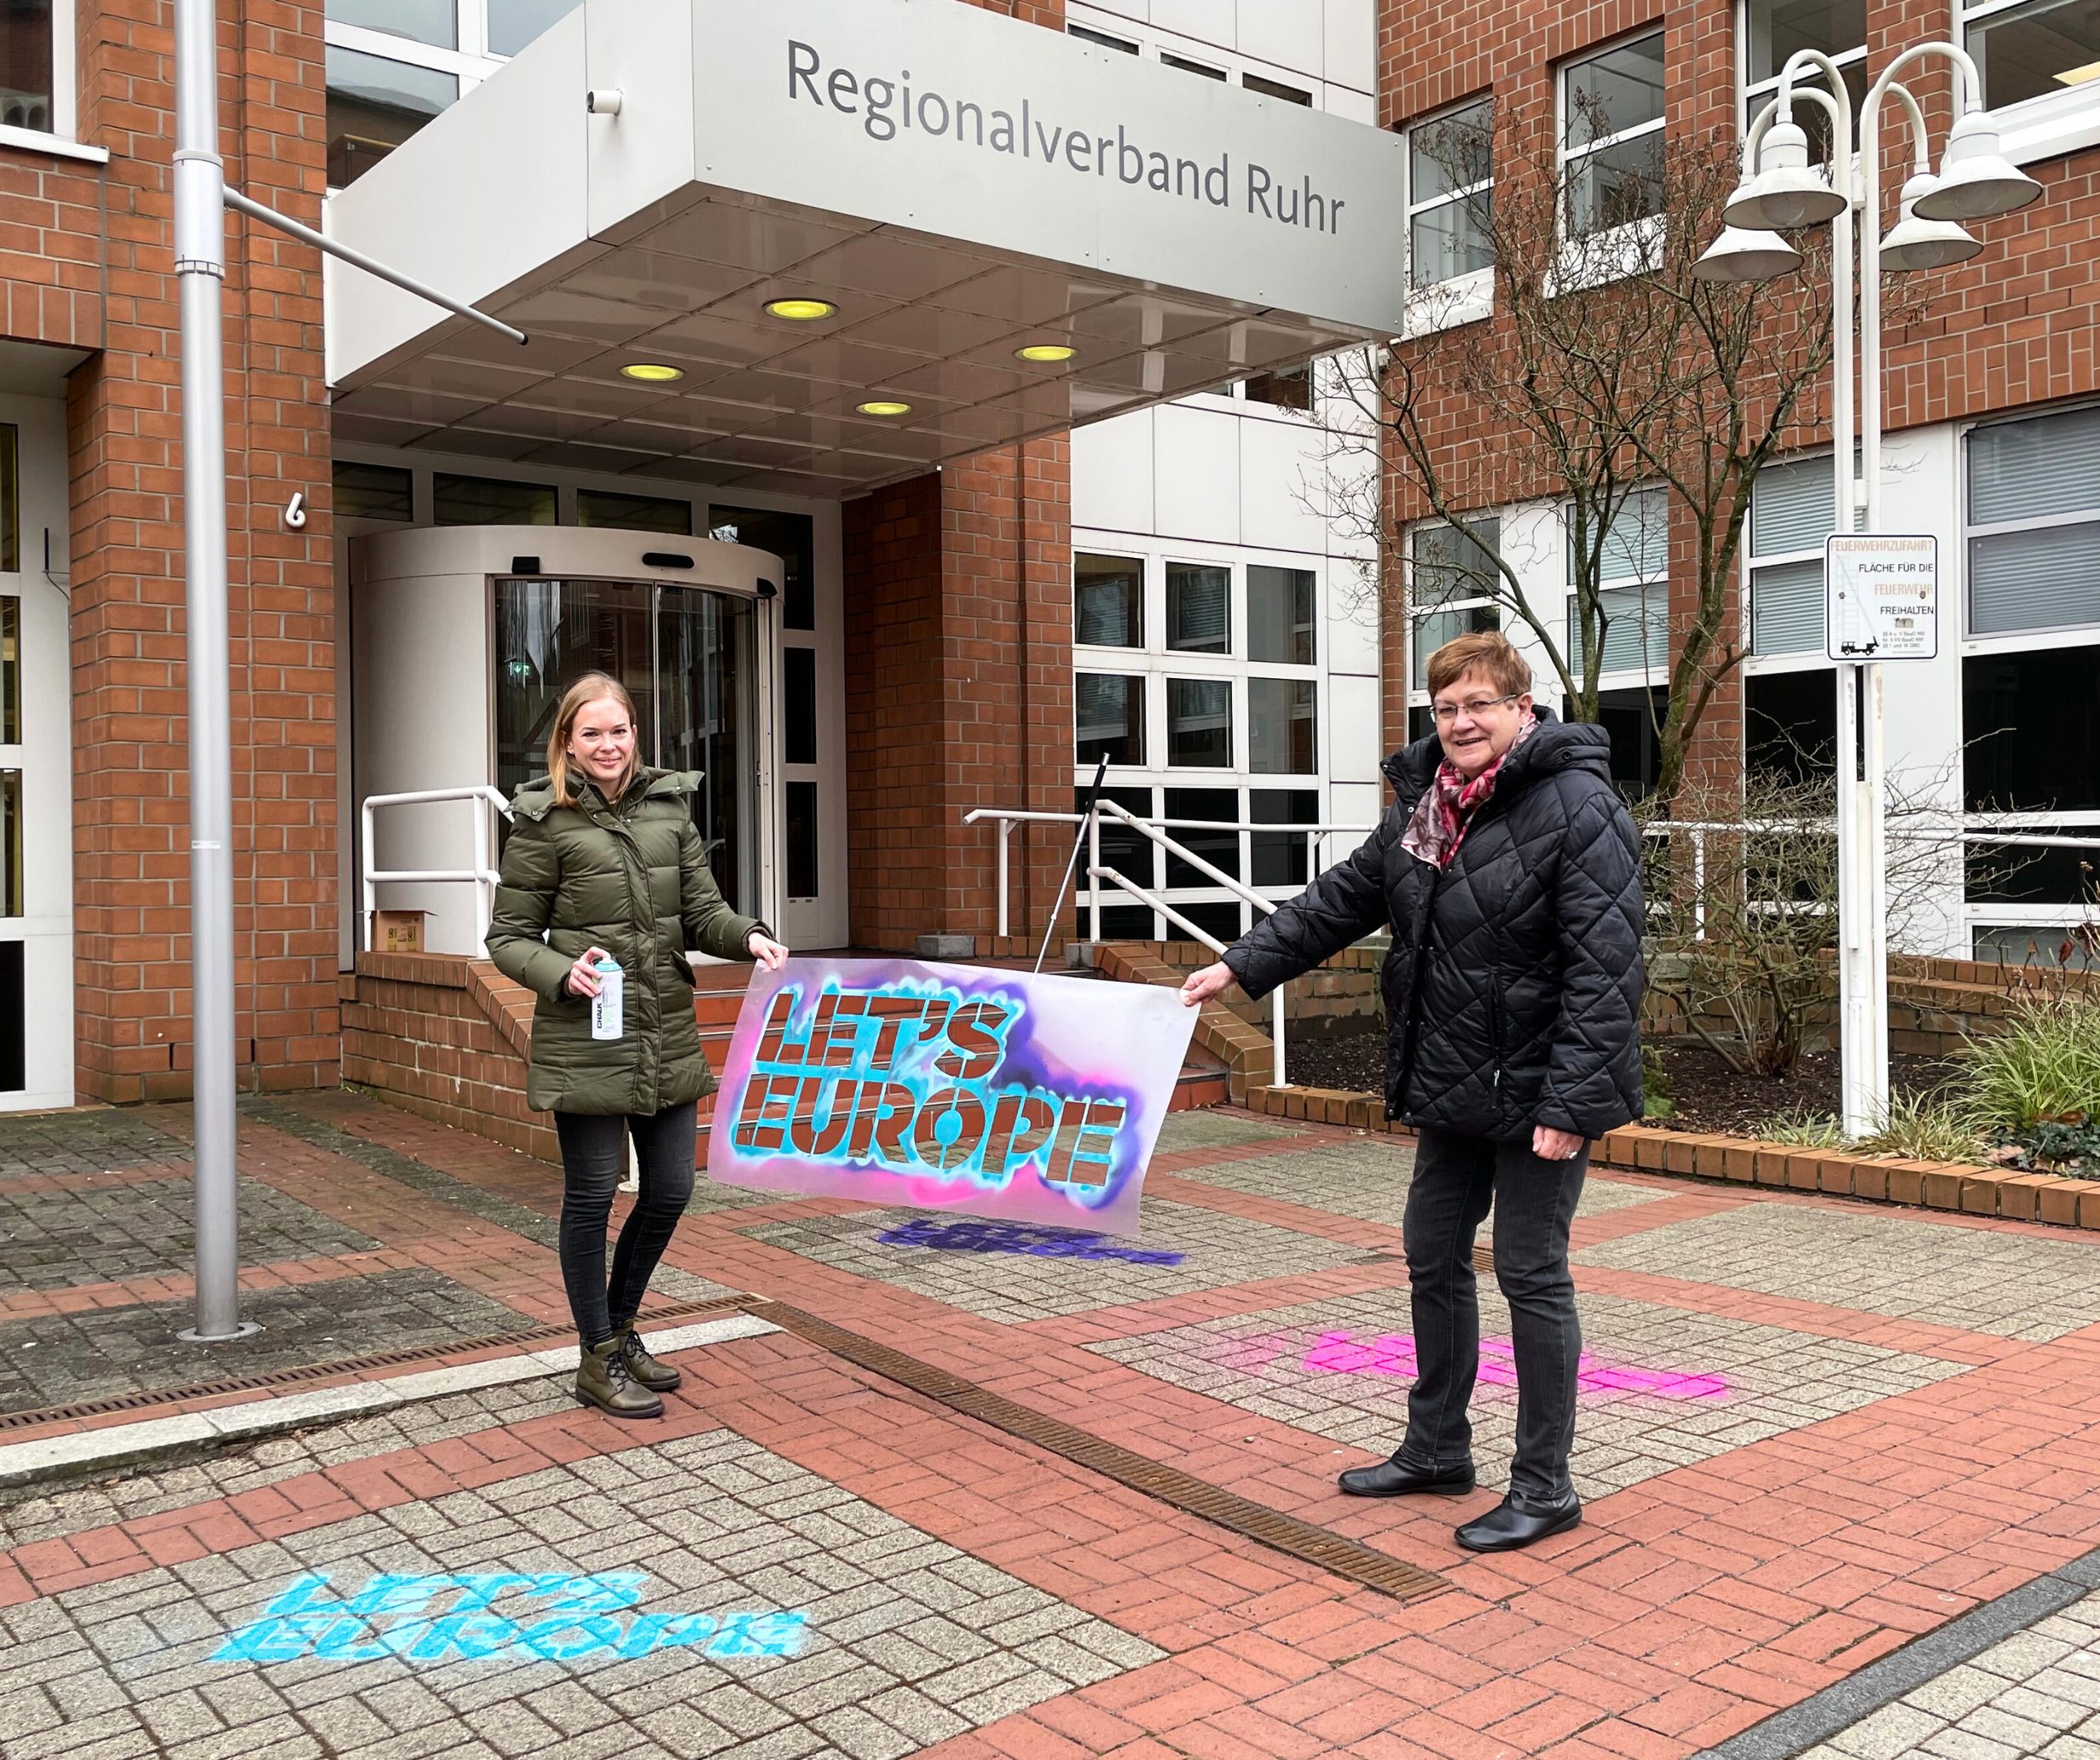 Regionaldirektorin Karola Geiß-Netthöfel und Victoria Krebber aus dem Referat Europäische und regionale Netzwerke Ruhr beim LET’S EUROPE-Kampagnenstart vor dem Gebäude des RVR.